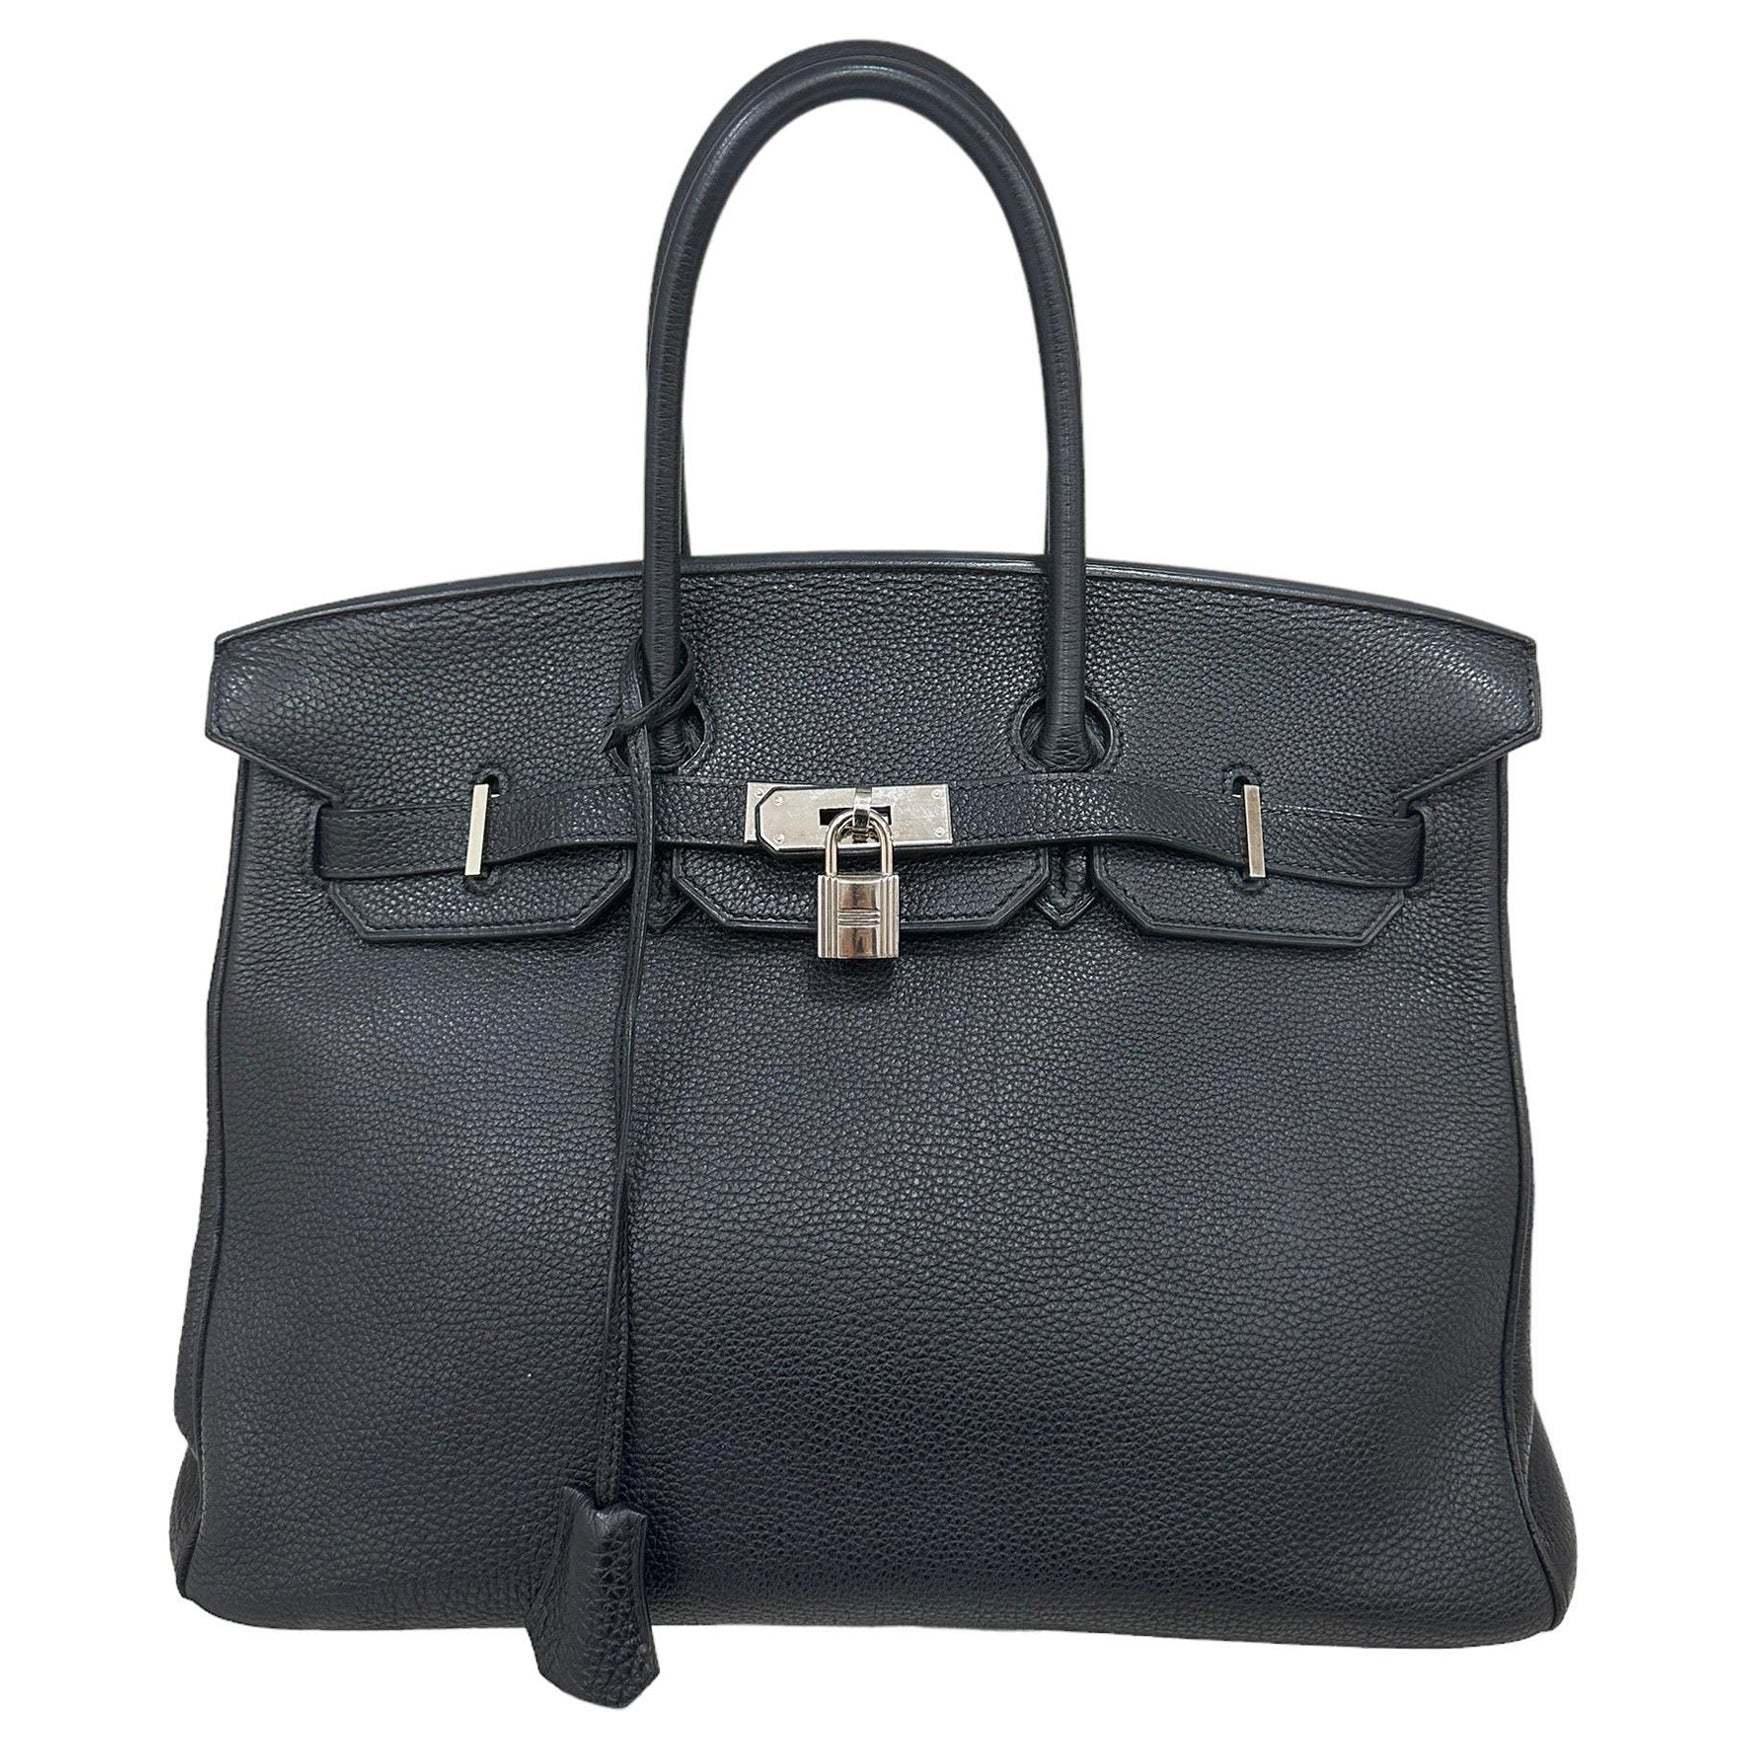 2007 Hermès Birkin Bag Togo Leather Plomb Top Handle Bag For Sale